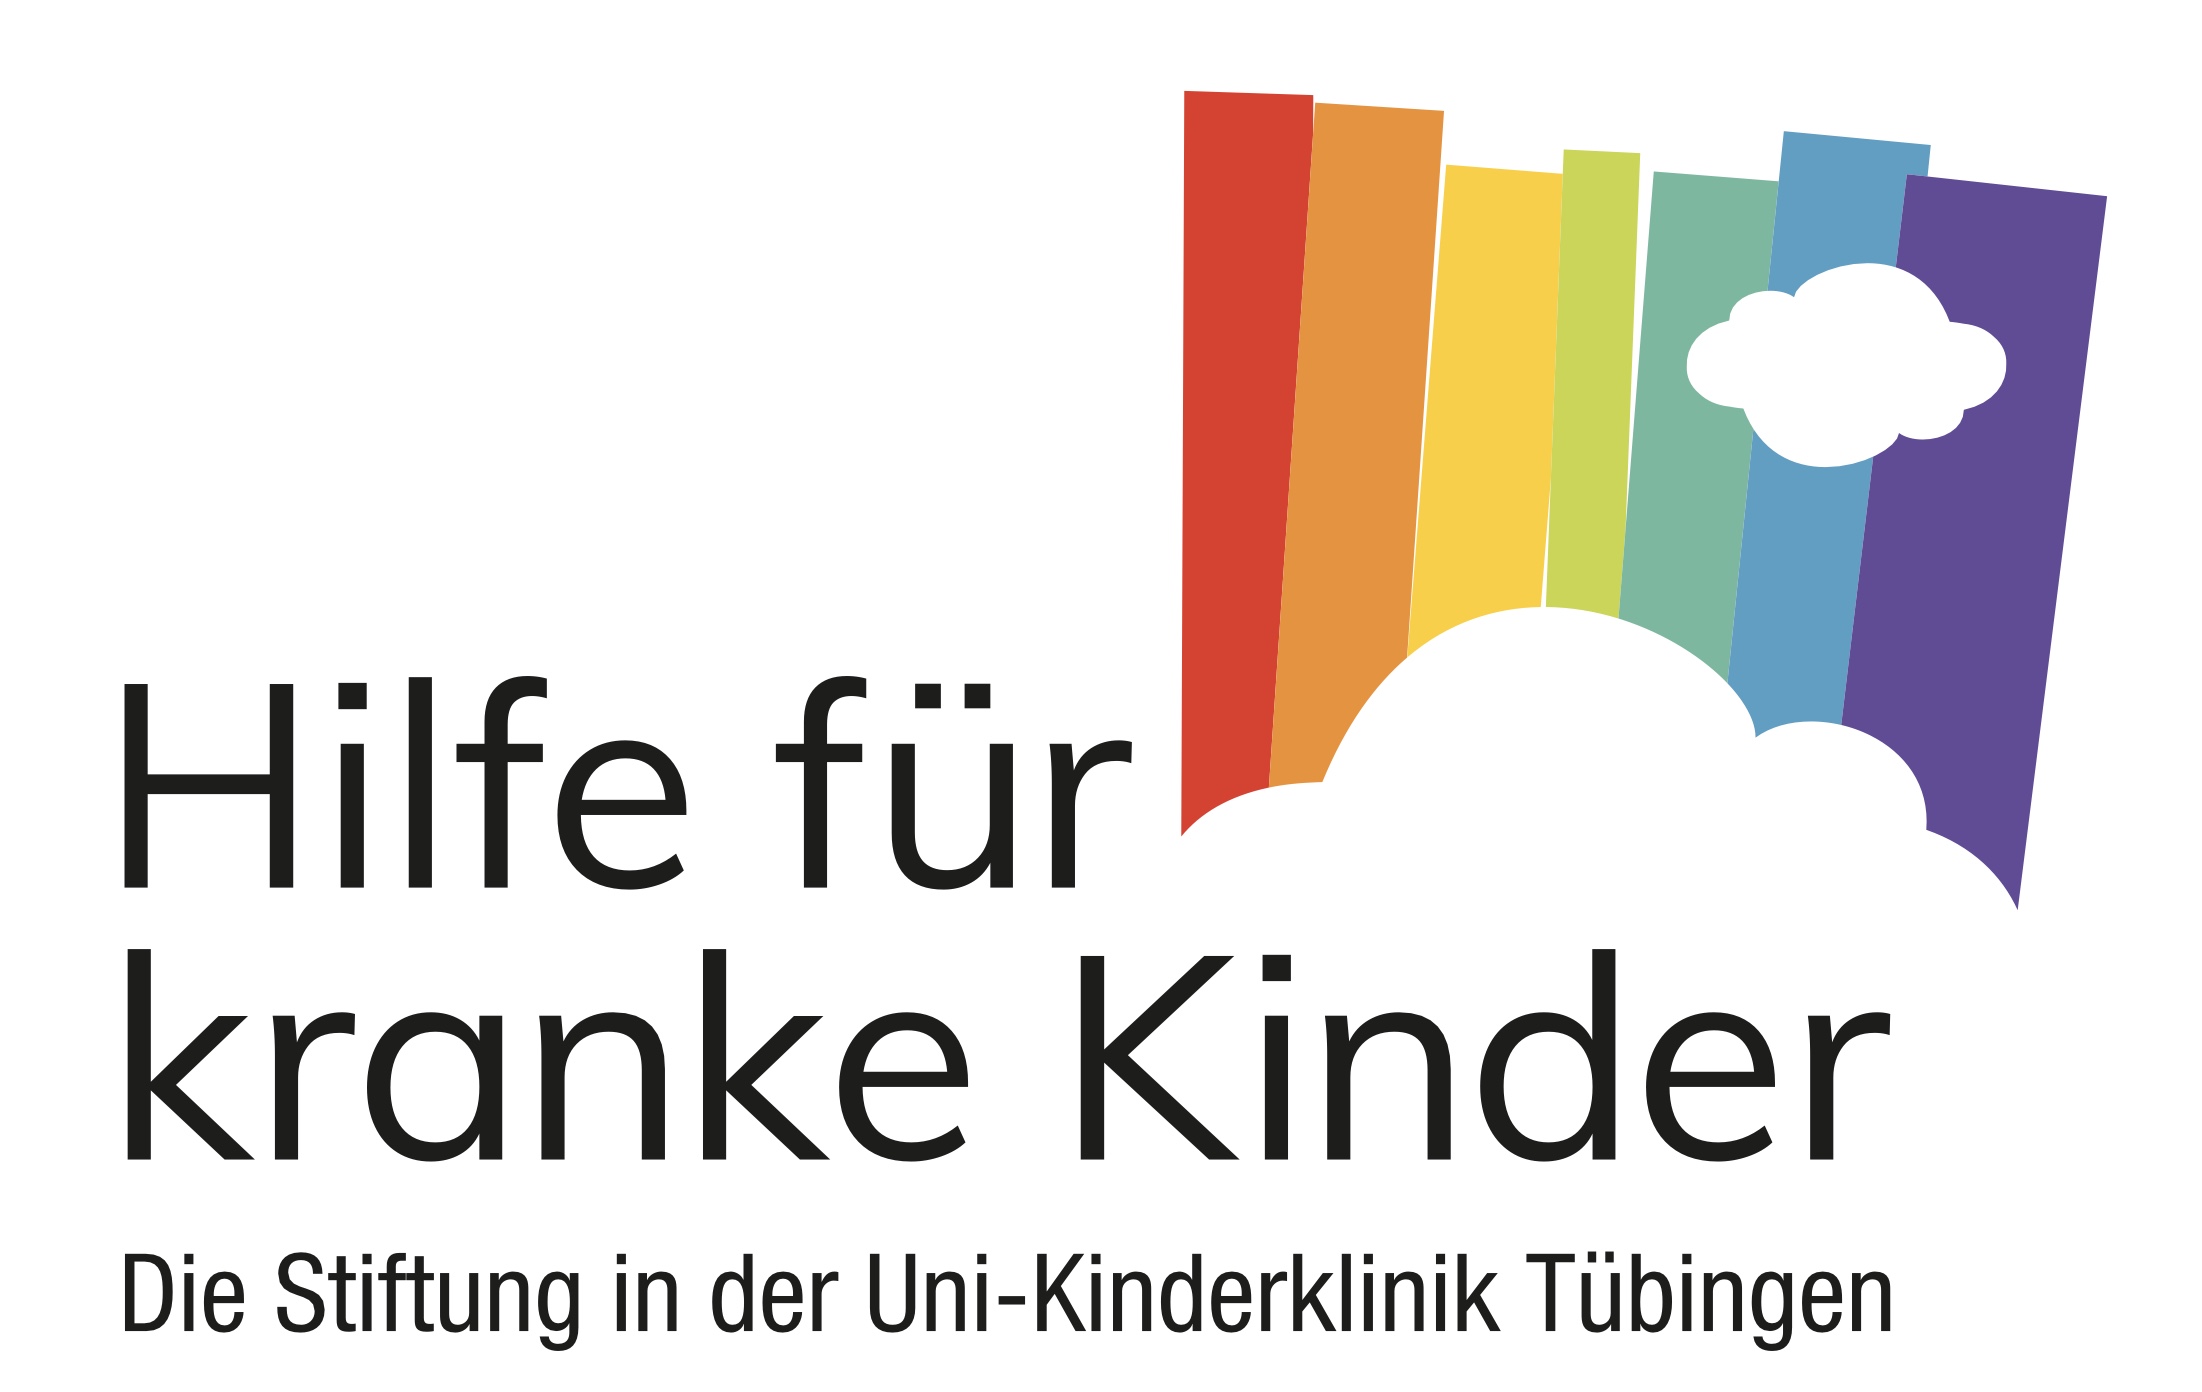 Die Stiftung in der Uni-Kinderklinik Tübingen